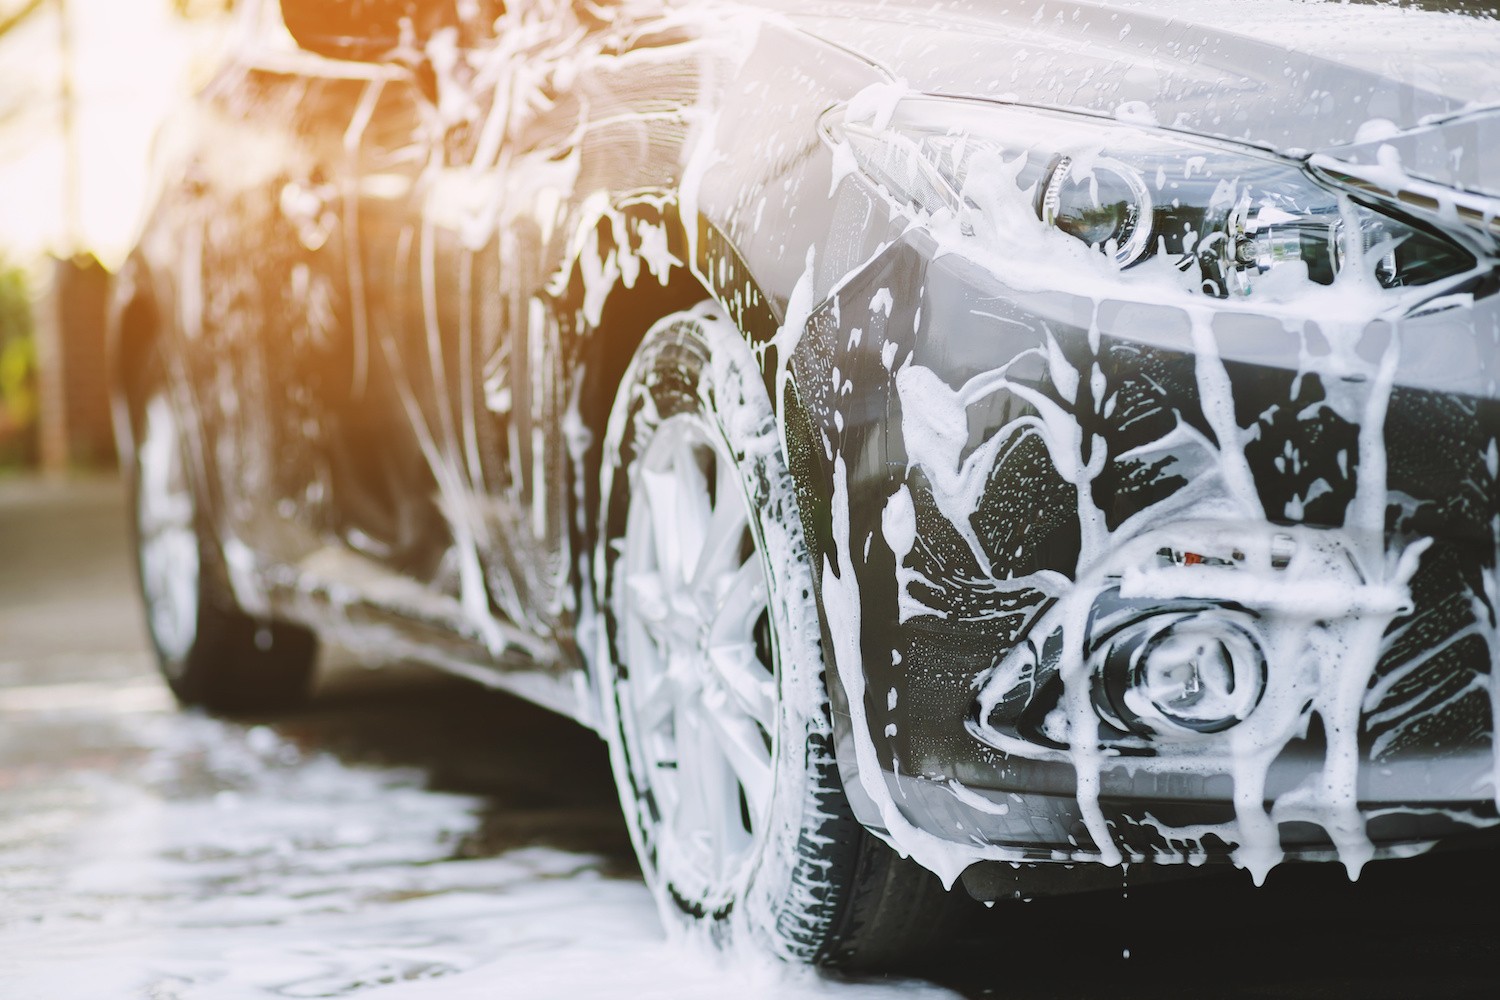 Dlaczego rozwijają się firmy zajmujące się czyszczeniem samochodów?